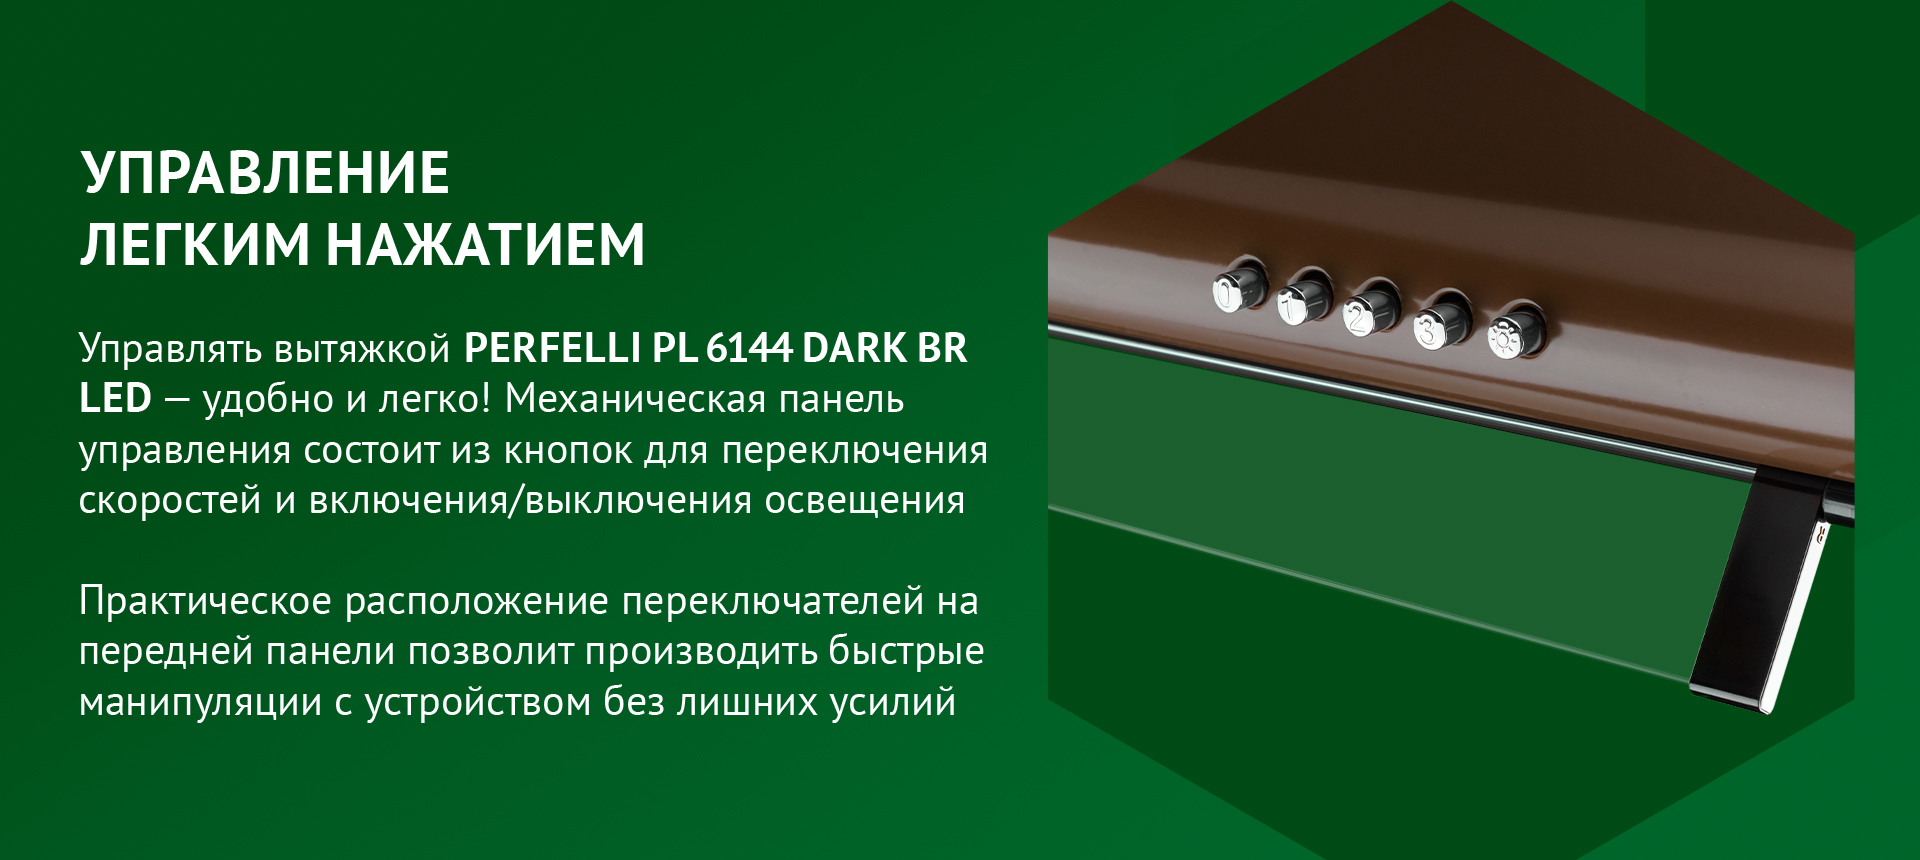 Управлять вытяжкой PERFELLI PL 6144 DARK BR LED – удобно и легко! Механическая панель управления состоит из кнопок для переключения скоростей и включения/выключения освещения. Практическое расположение переключателей на передней панели позволит производить быстрые манипуляции с устройством без лишних усилий